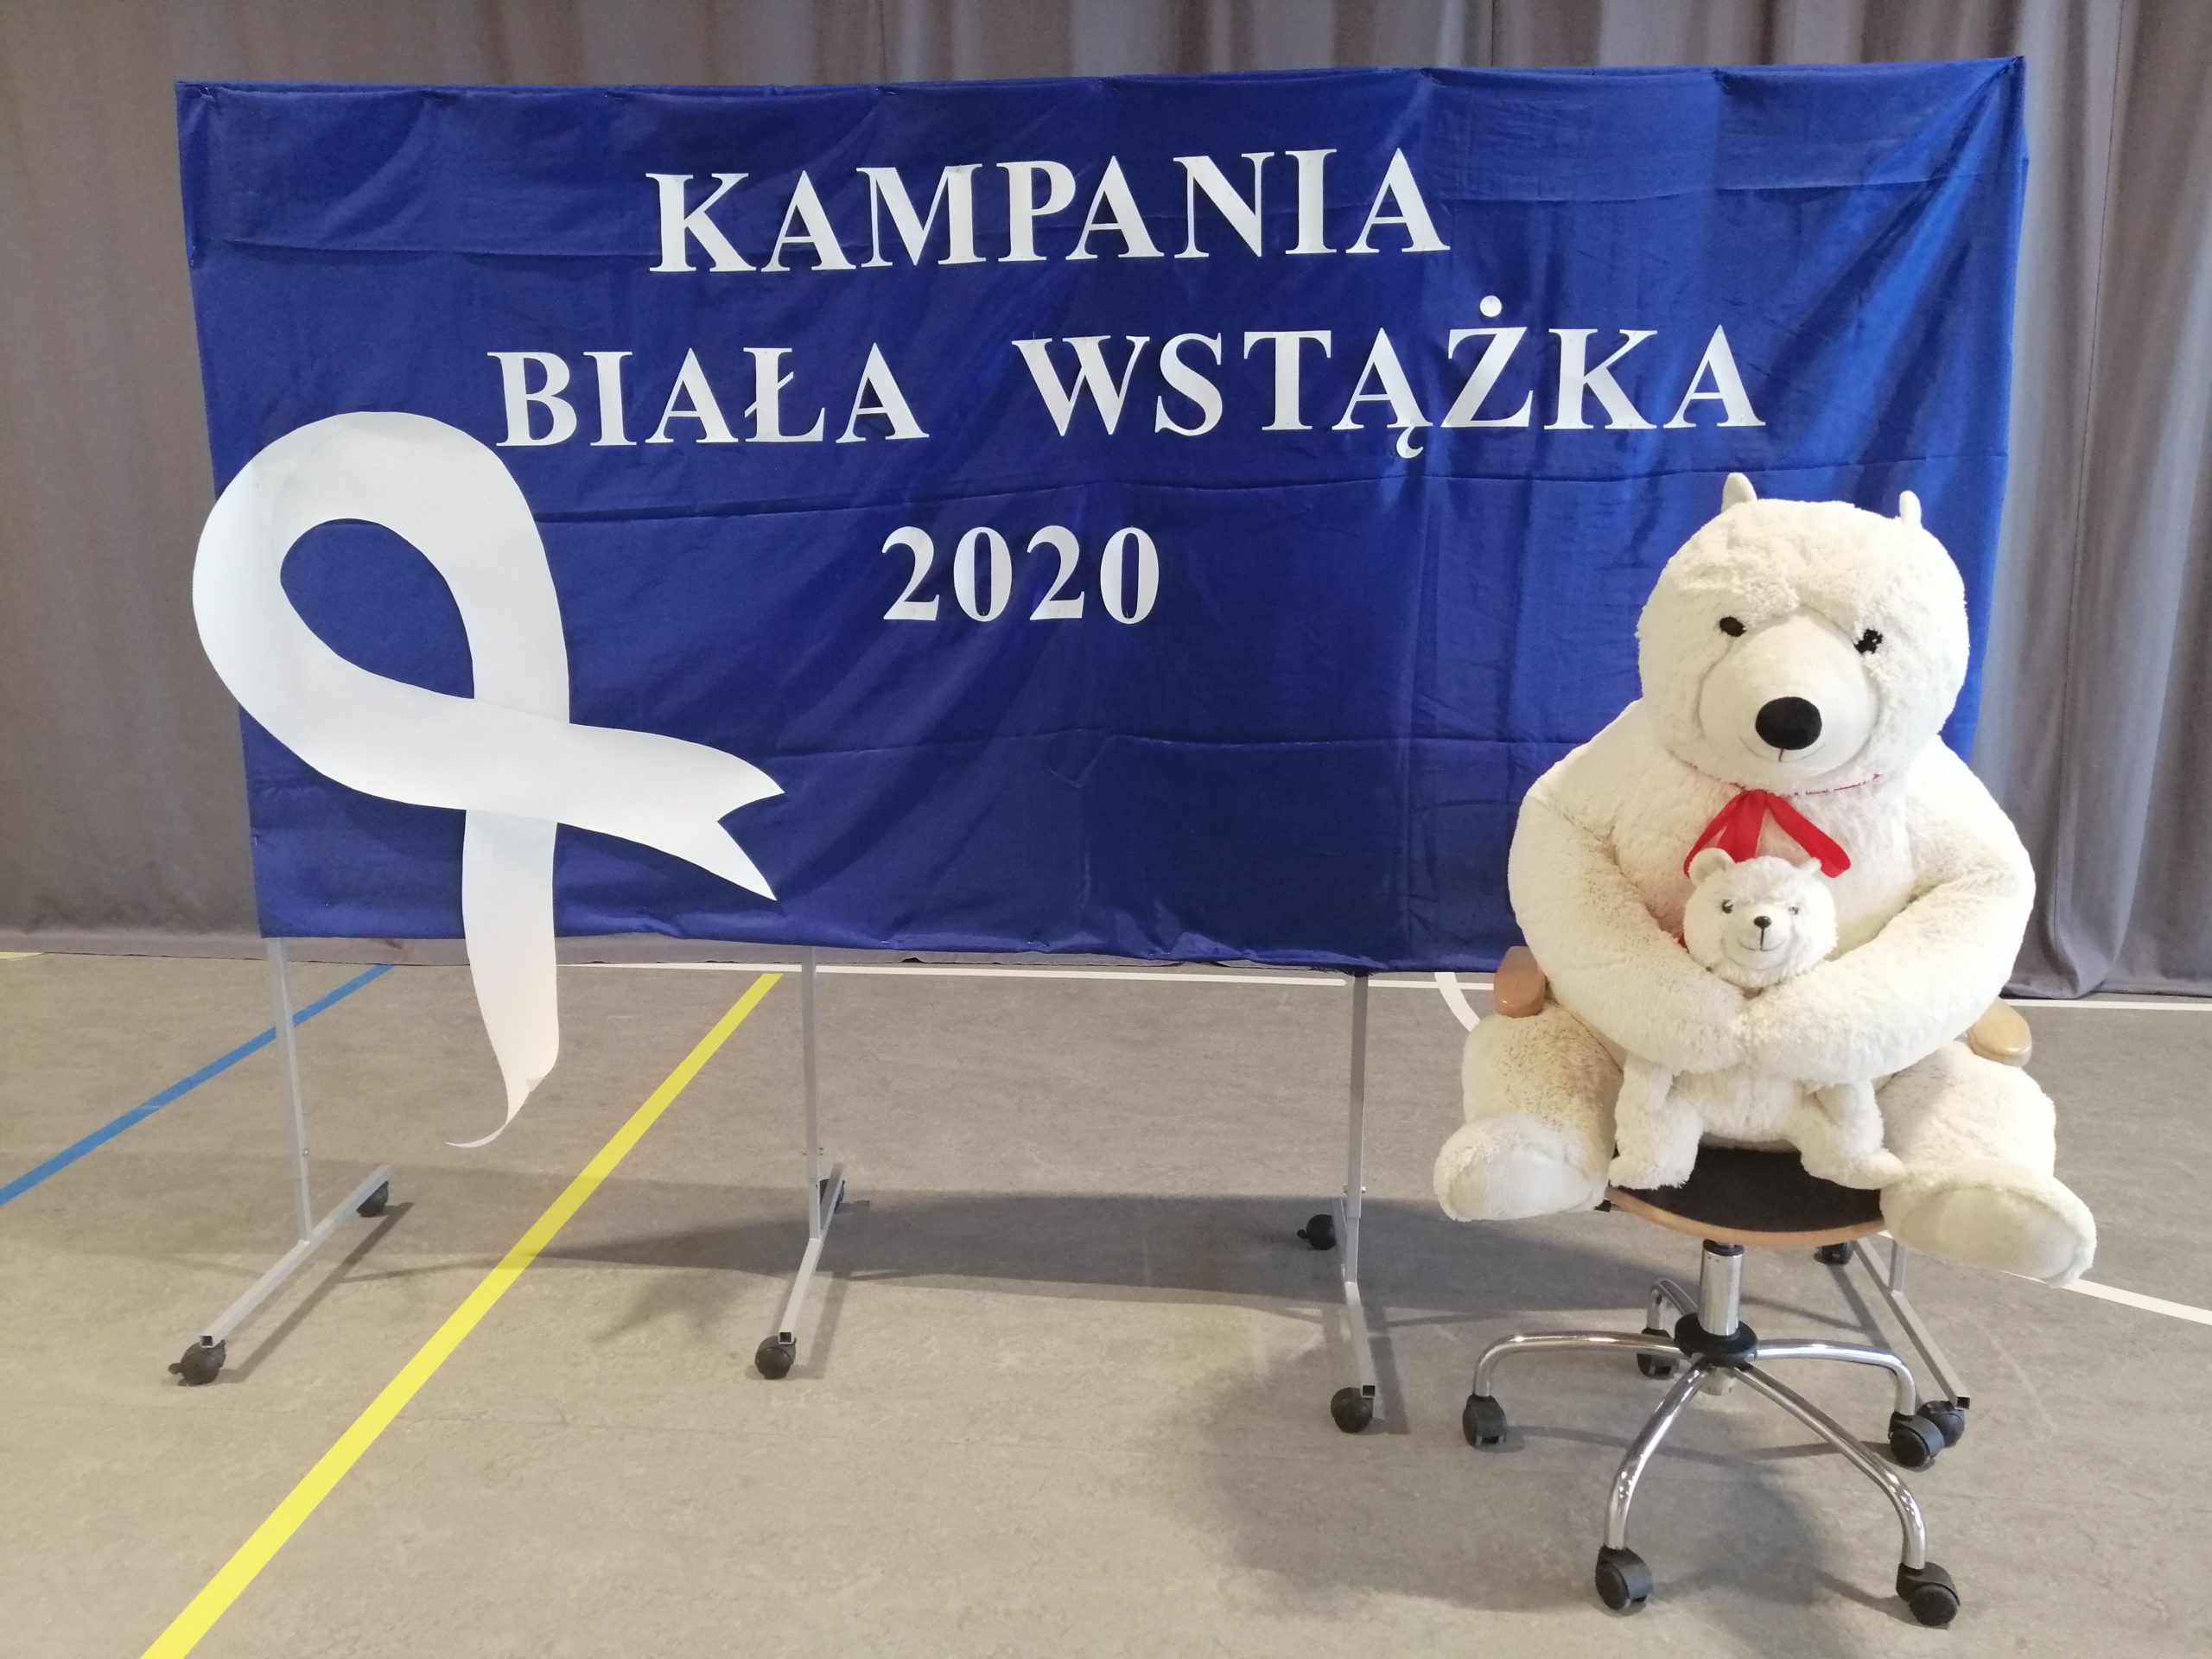 Inauguracja Kampanii "Biała wstążka" w Szkole Podstawowej w Gliniance